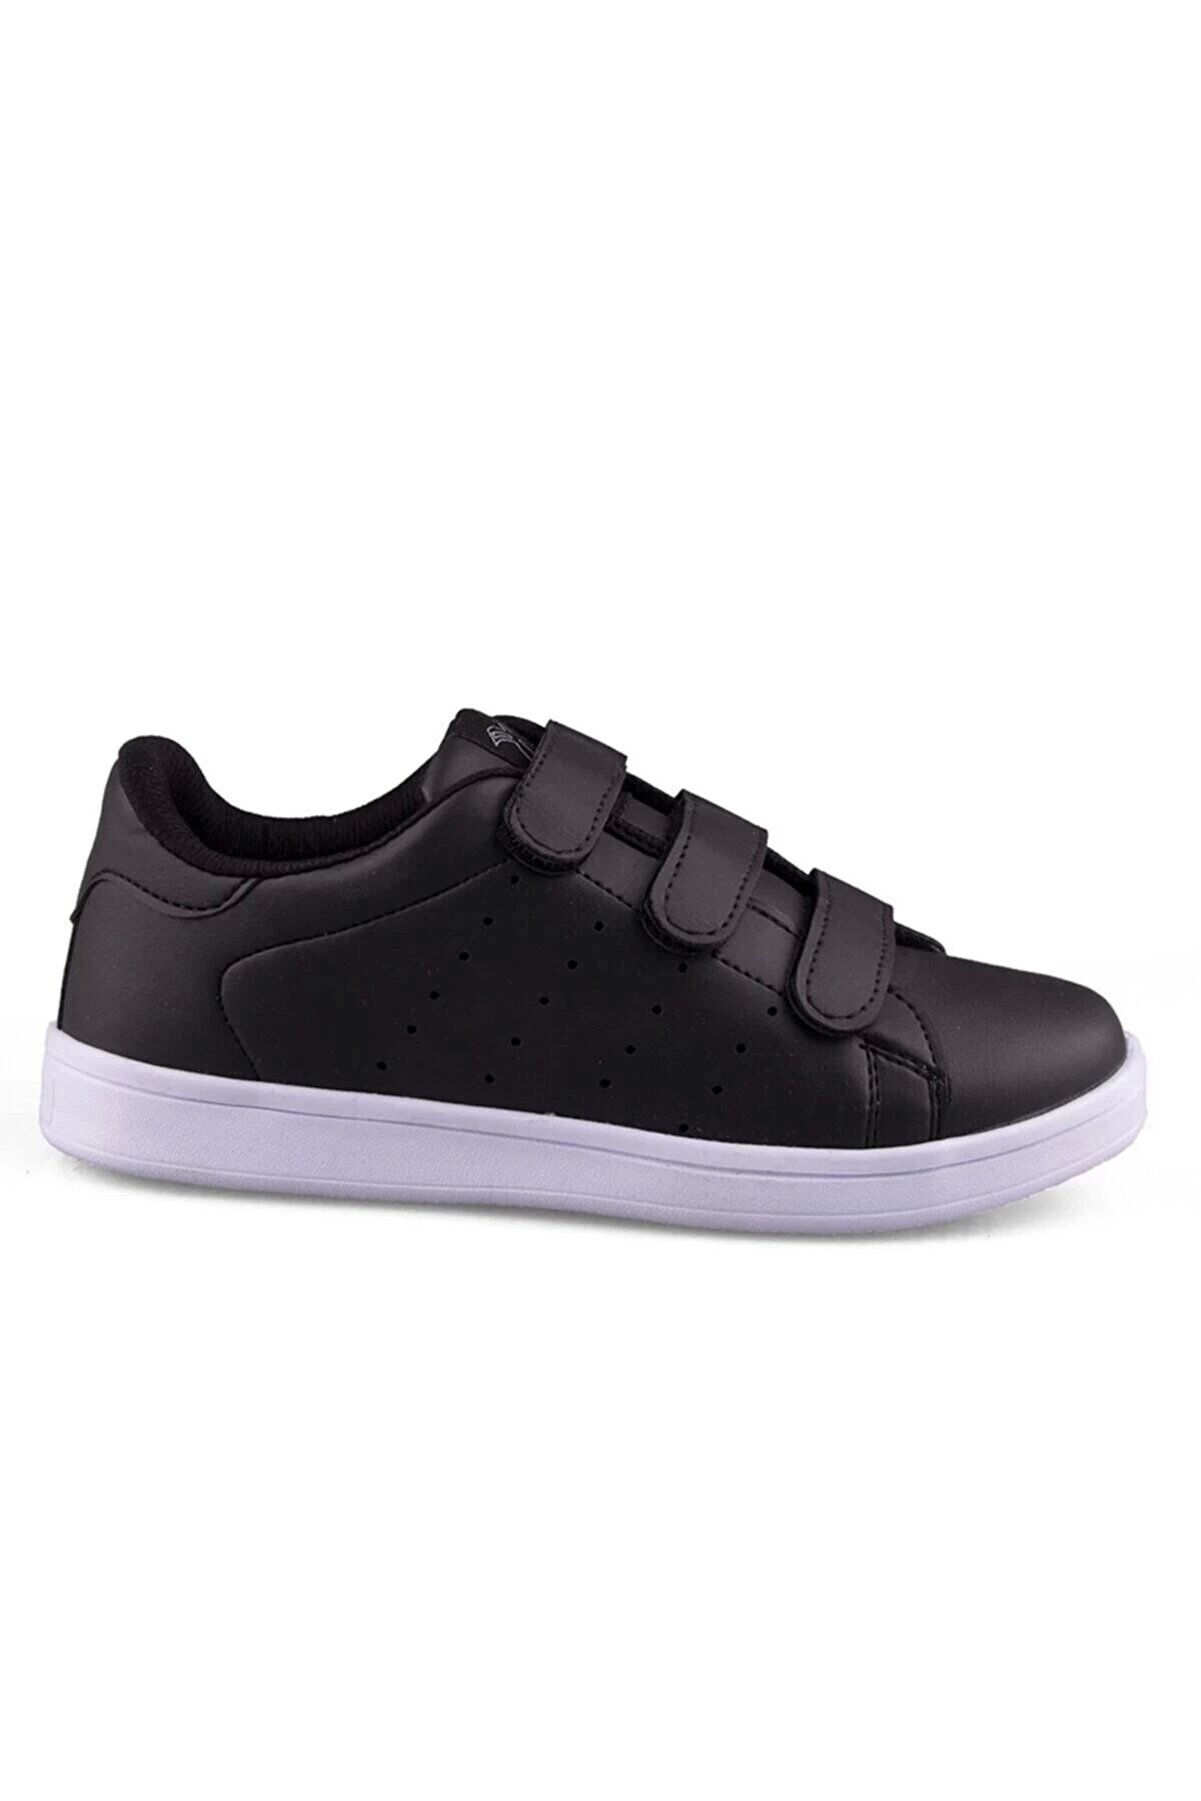 Venuma Kadın Siyah Garson Fashion Spor Sneaker Yürüyüş Ayakkabısı - 308